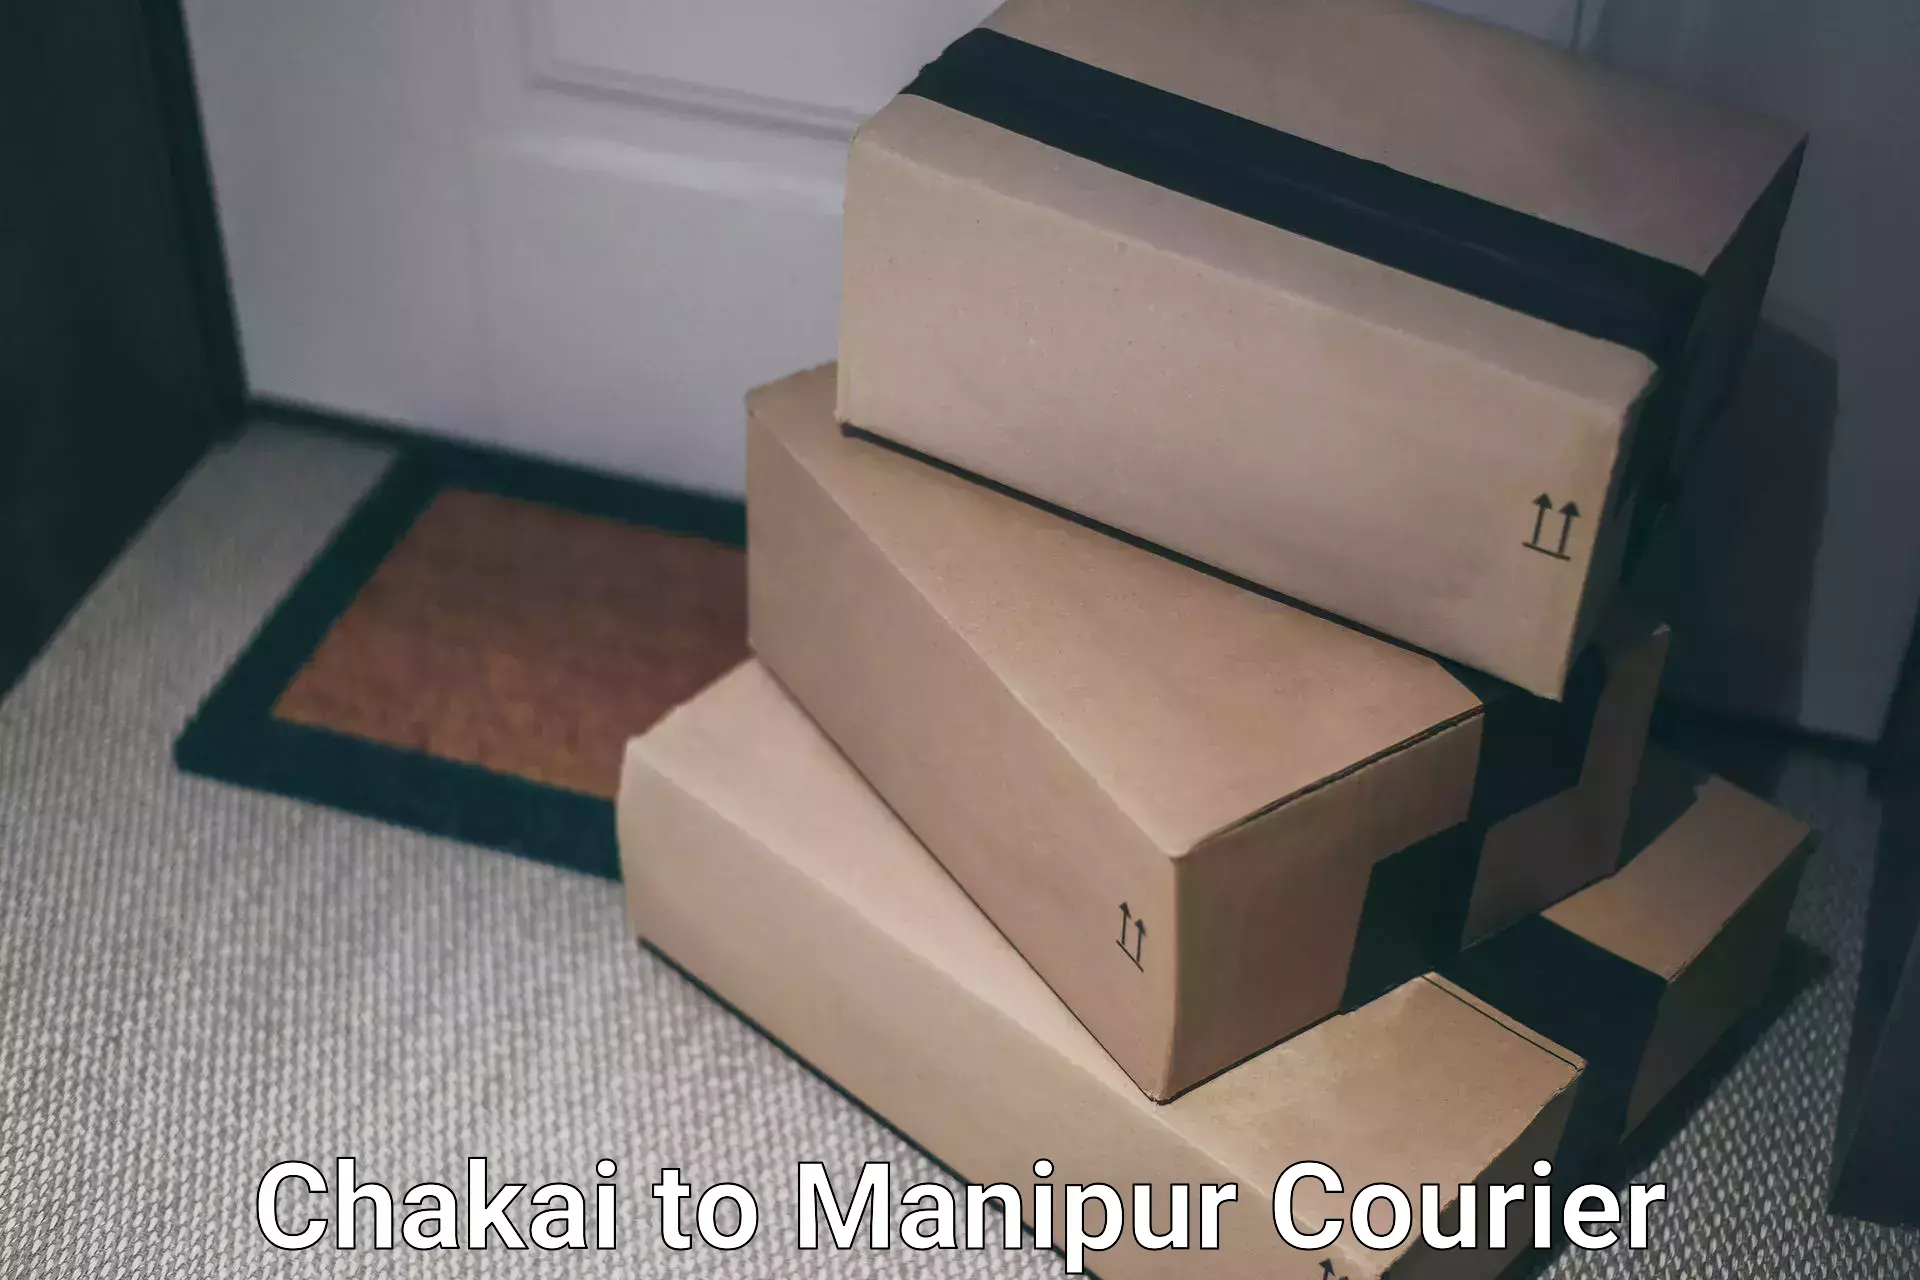 User-friendly courier app Chakai to Kanti